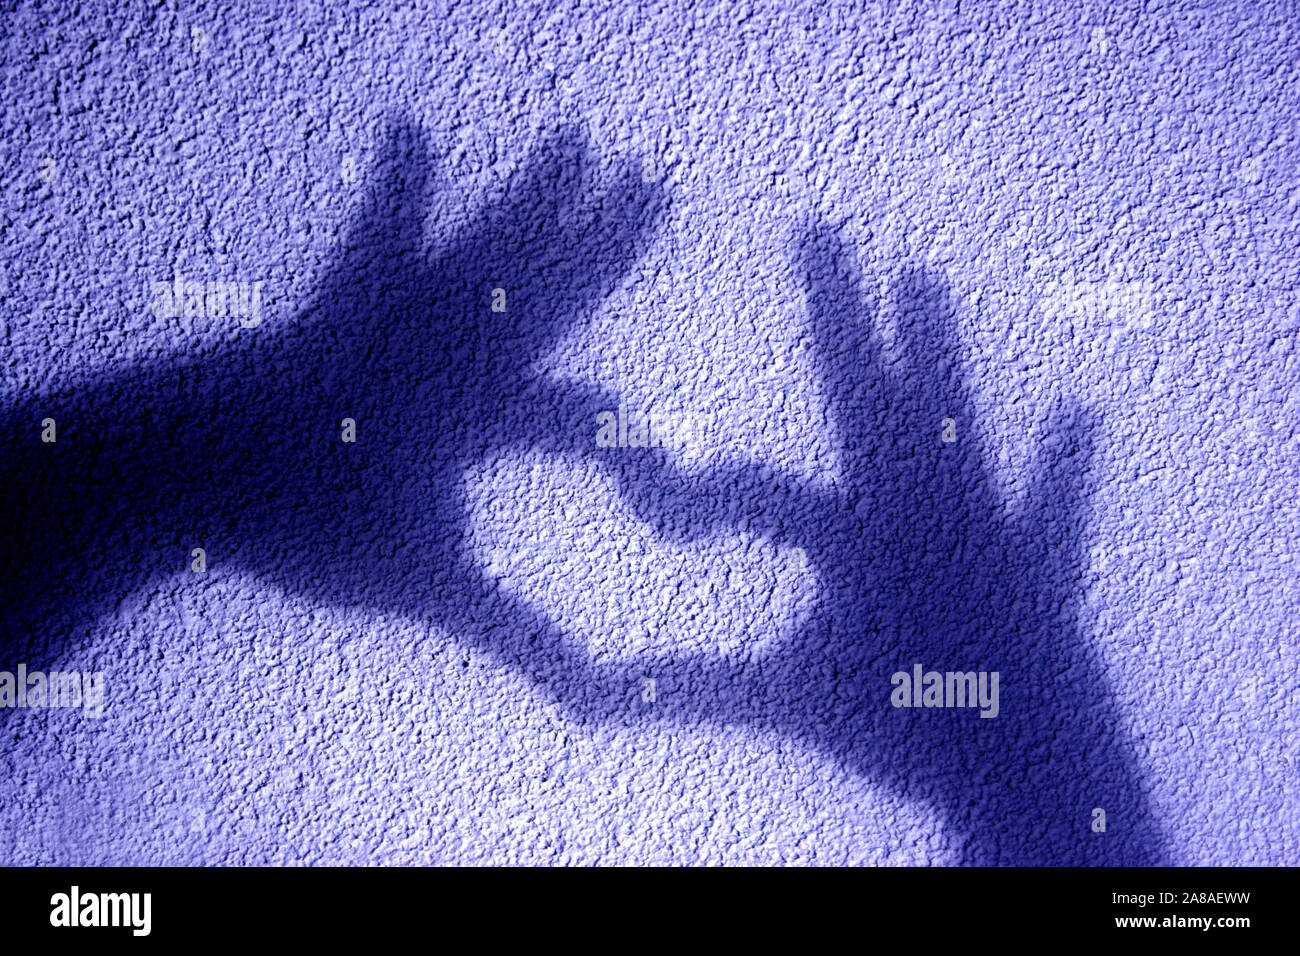 Schattenspiel, Schatten zweier Hände formen ein Herz auf eine Mauer, Stock Photo